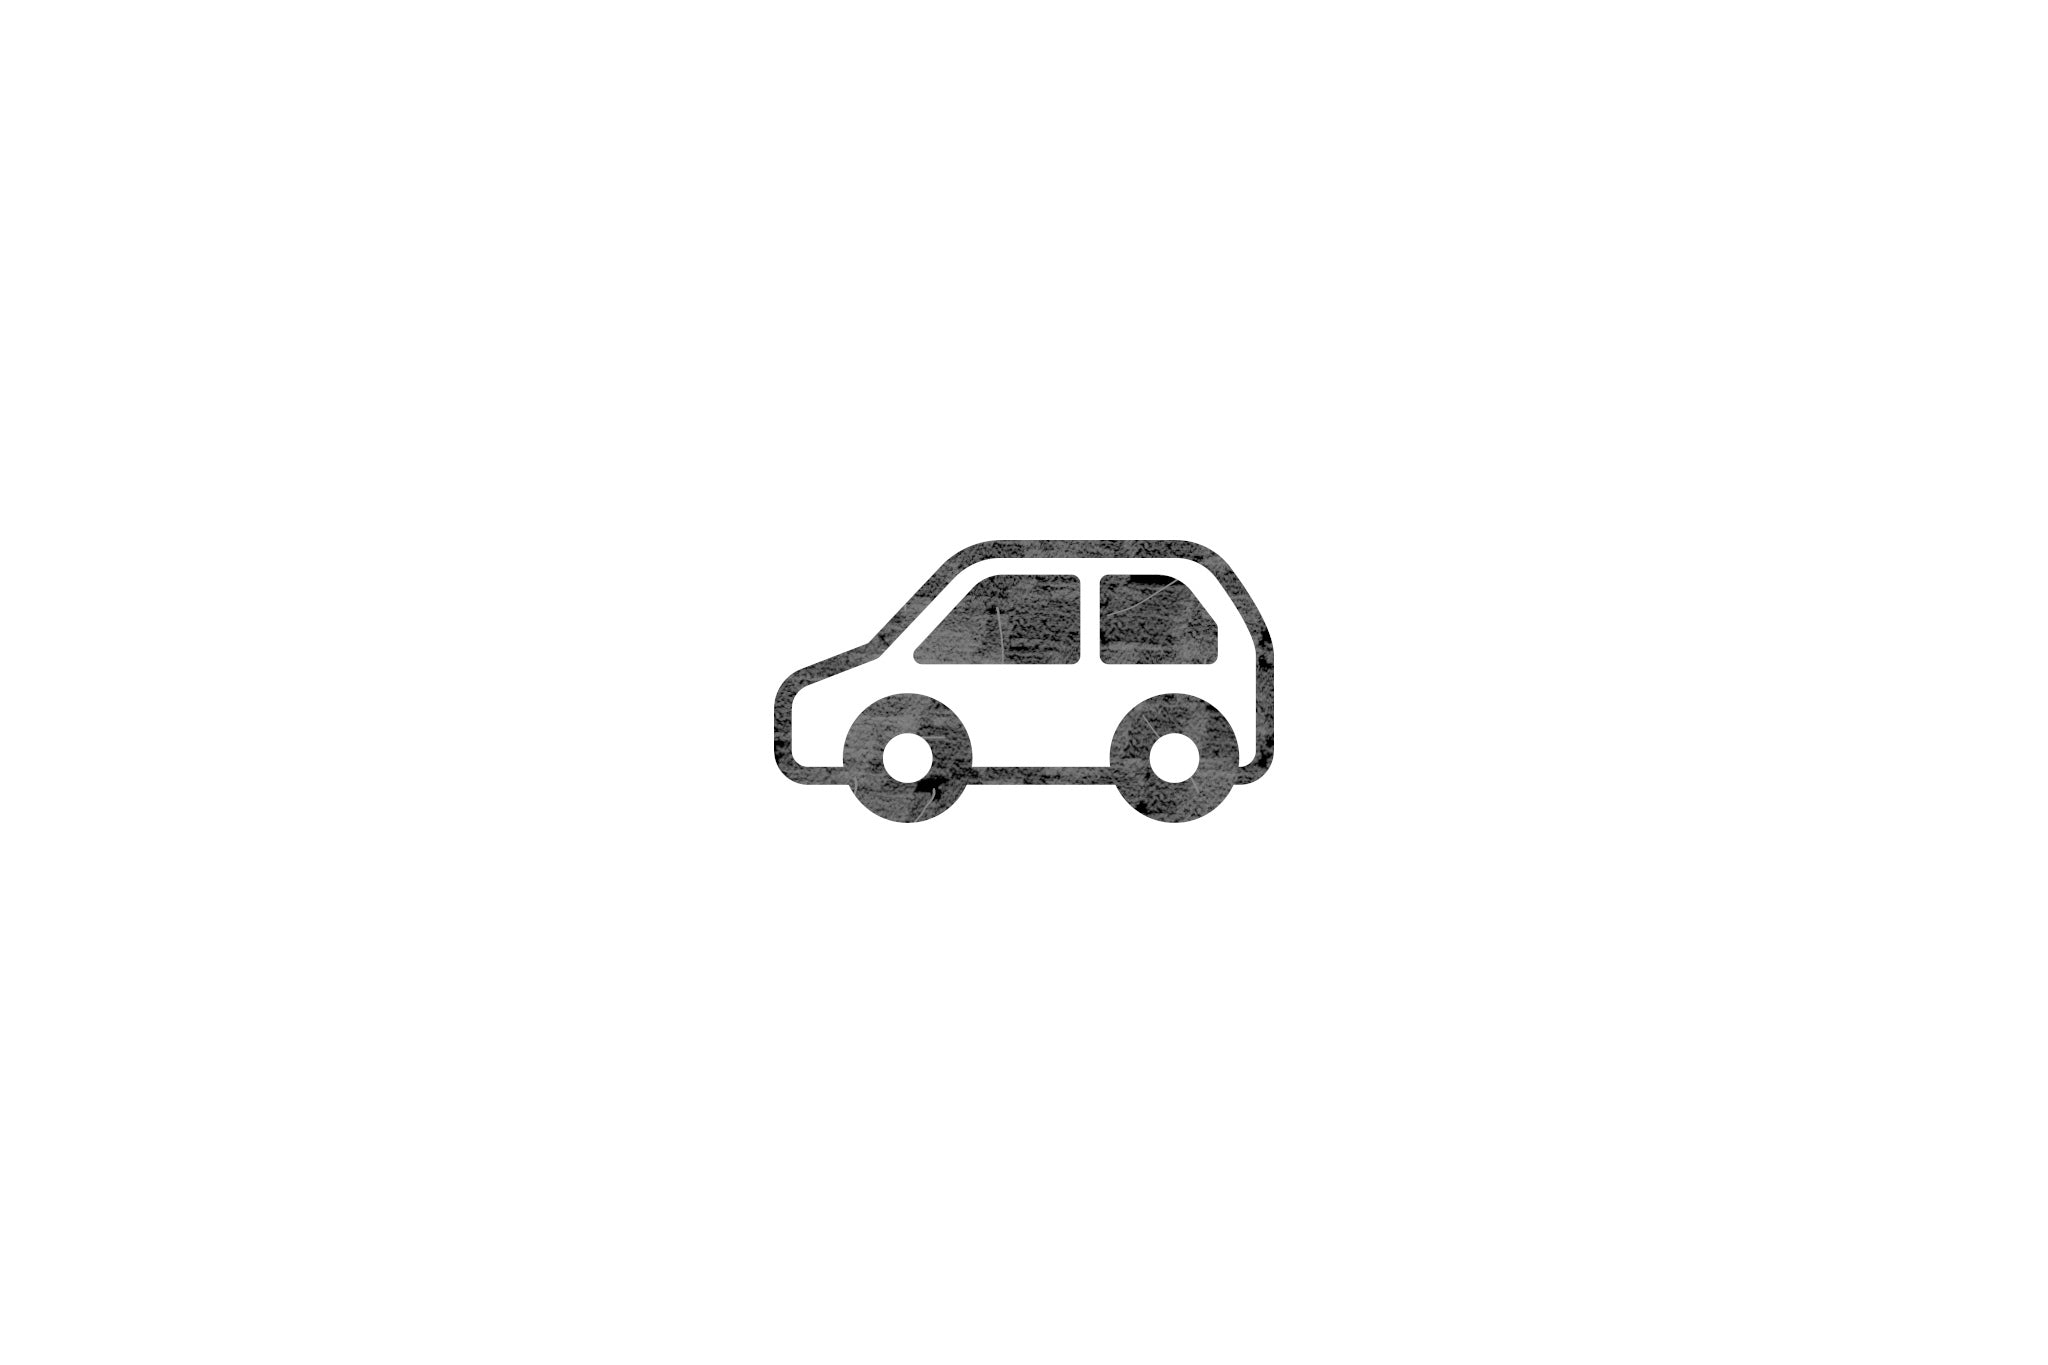 Houten ecologische symbool stempel met symbool van een auto